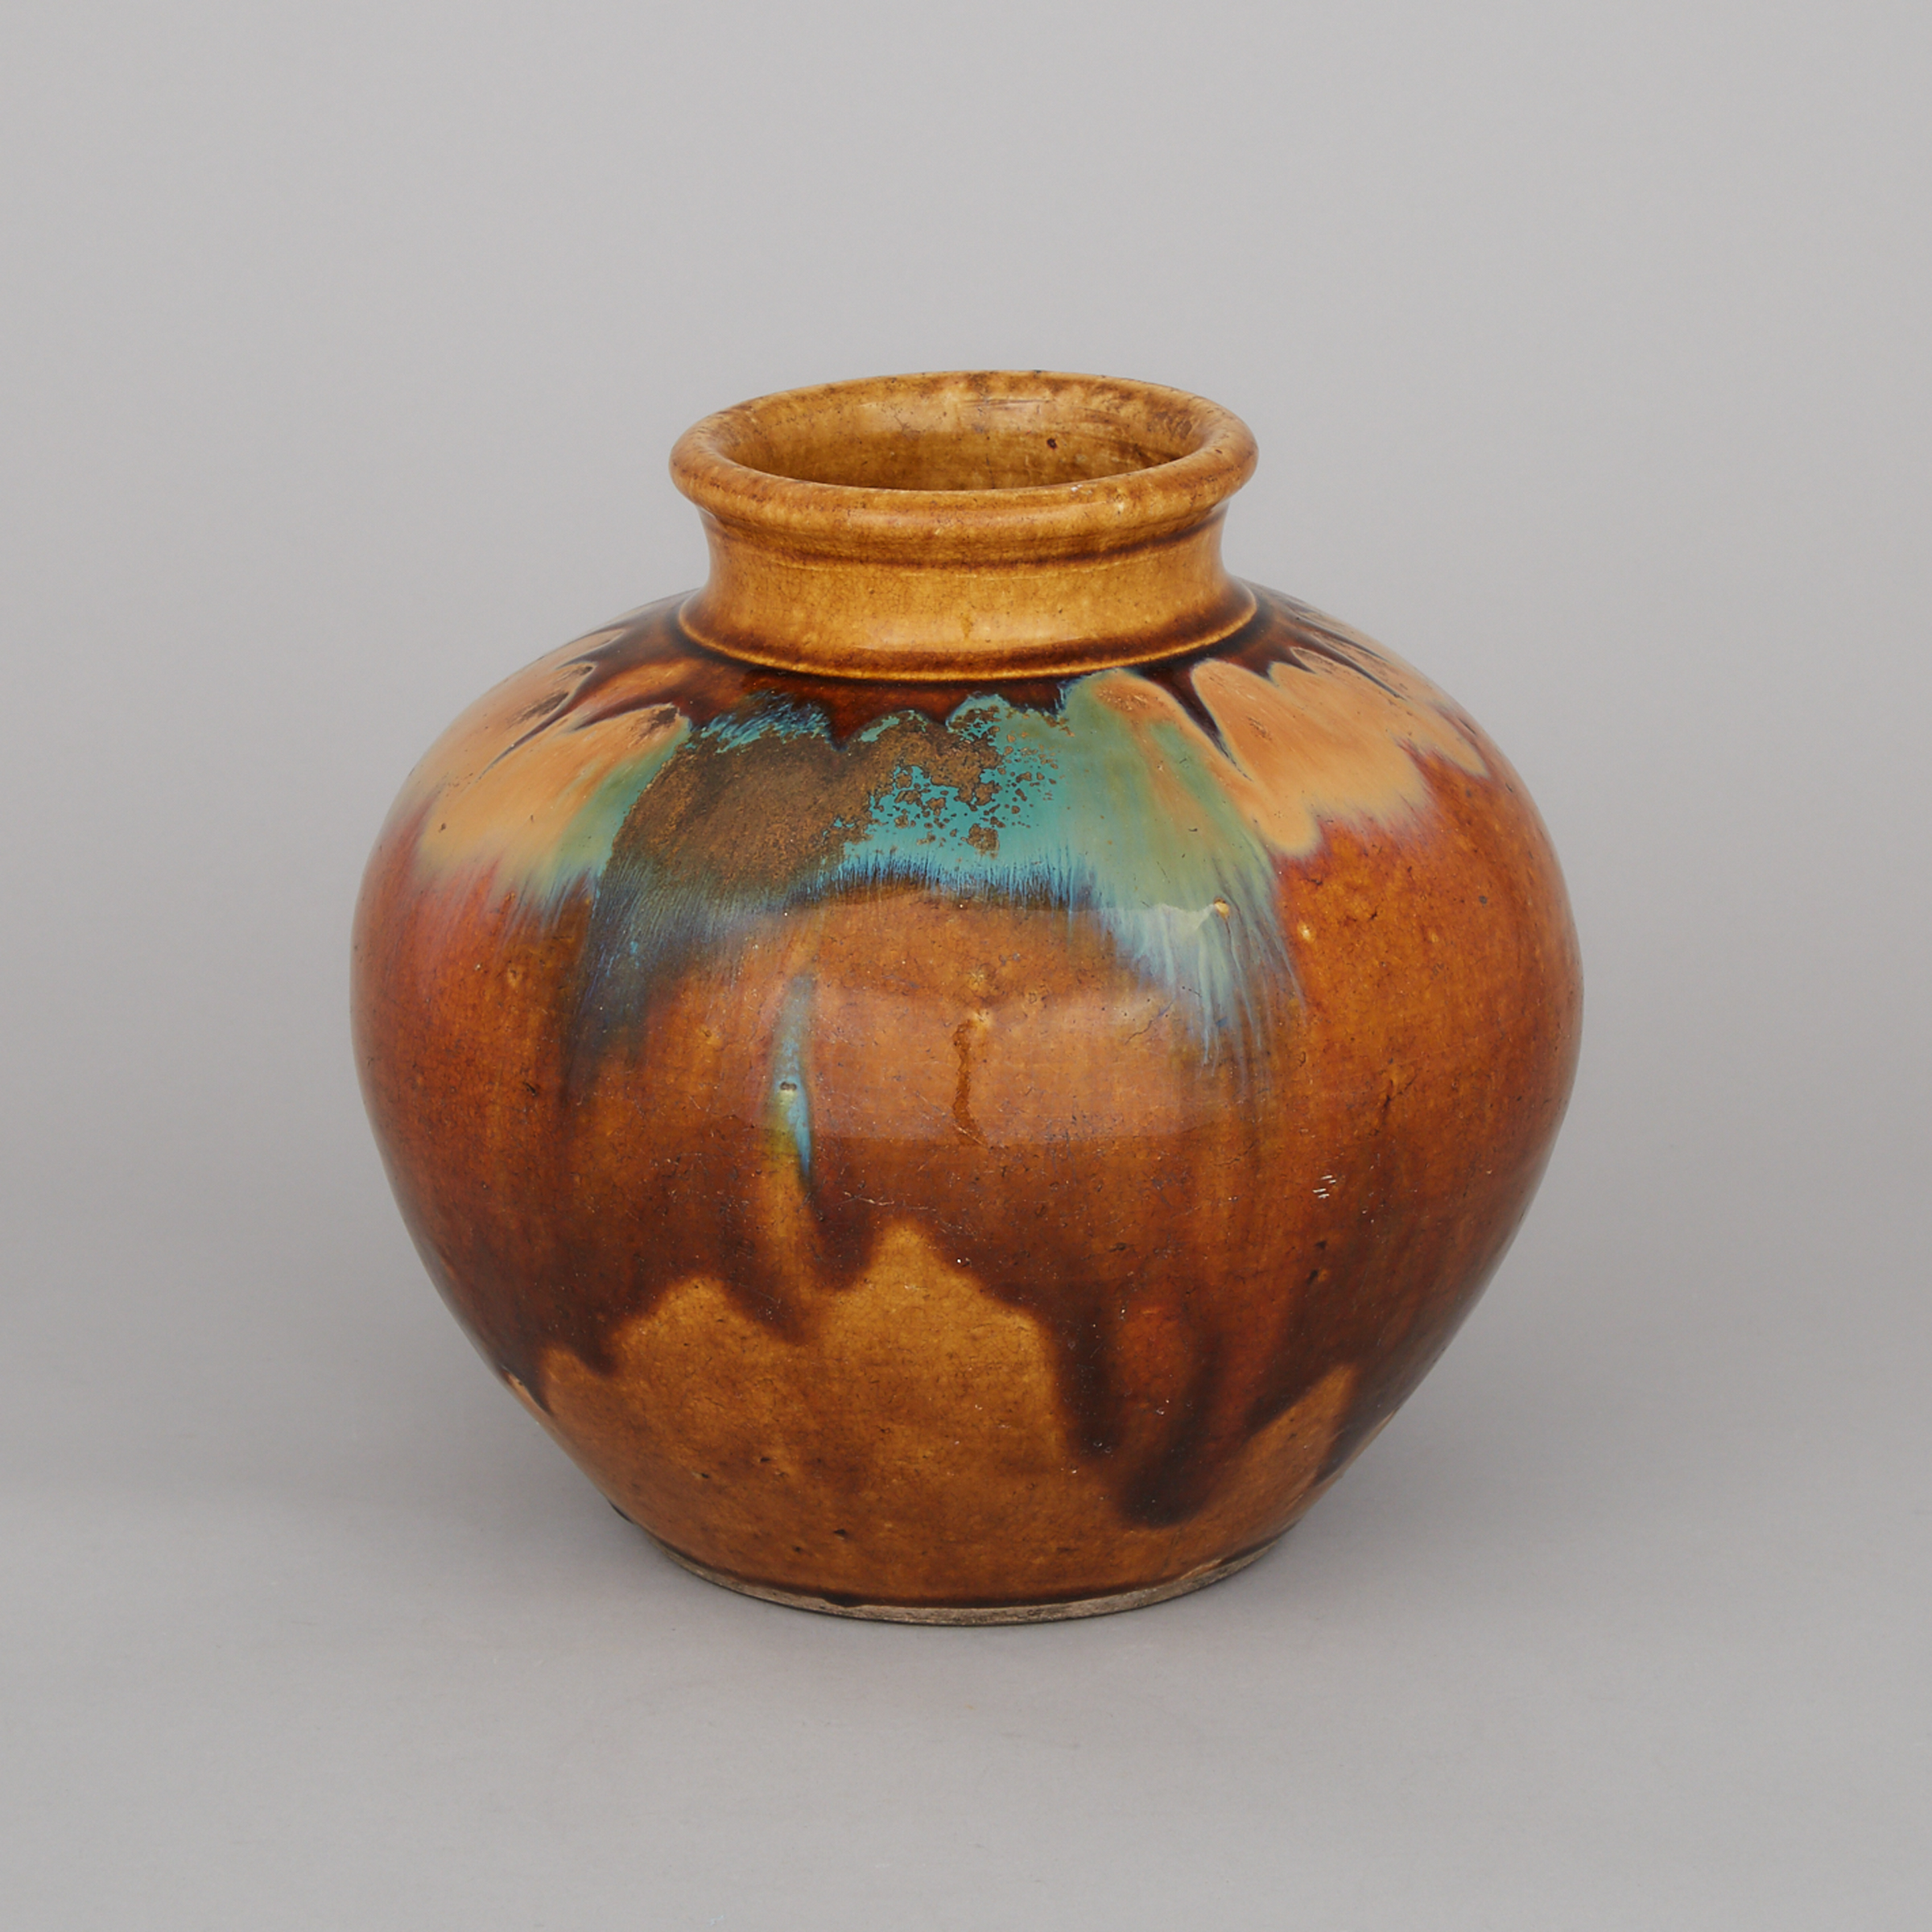 A Large Ovoid Form Brown Glazed Jar